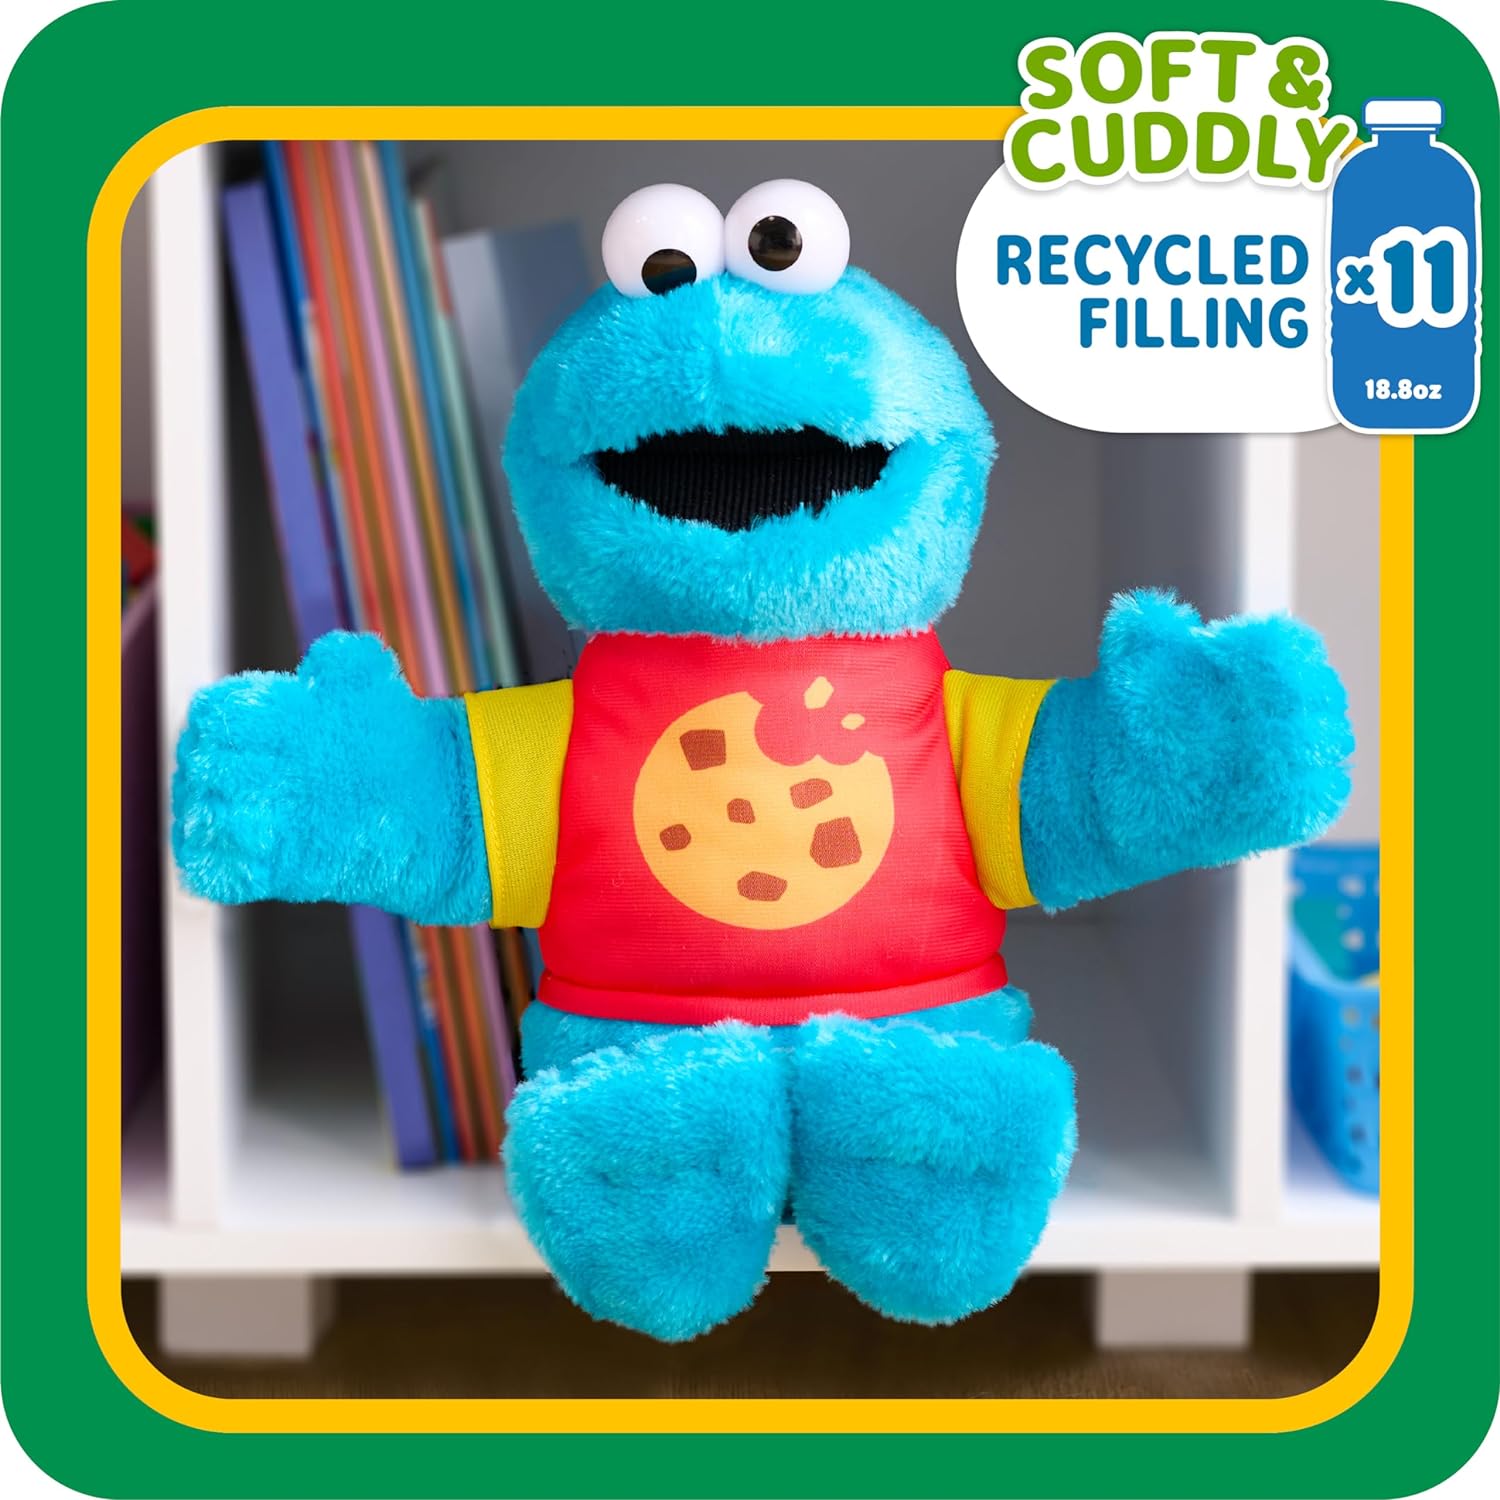 لعبة Just Play SESAME STREET Sing-Along Cookie Monster مقاس 13 بوصة من القطيفة المحشوة، حشو معاد تدويره، أزرق، ألعاب للأطفال للأعمار من 18 شهرًا